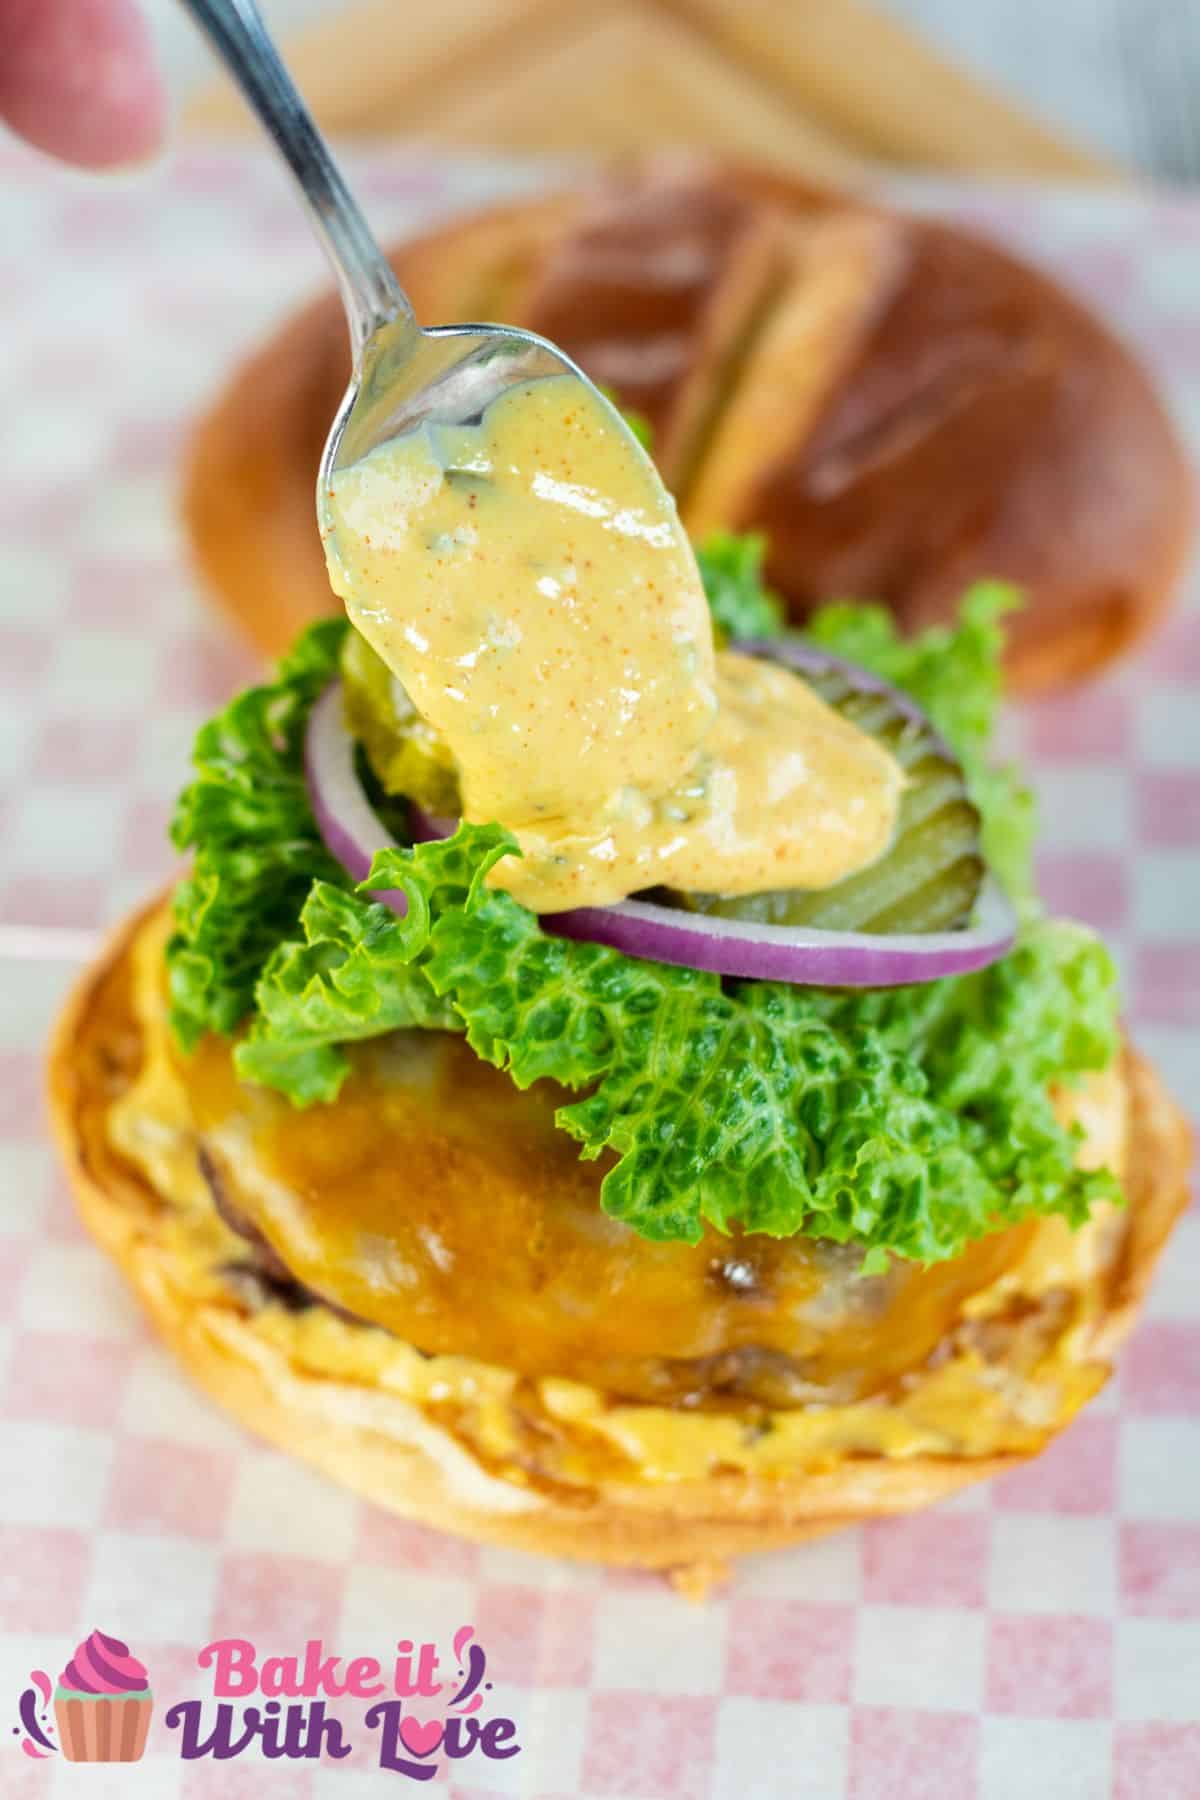 Tall image of a burger with burger sauce.